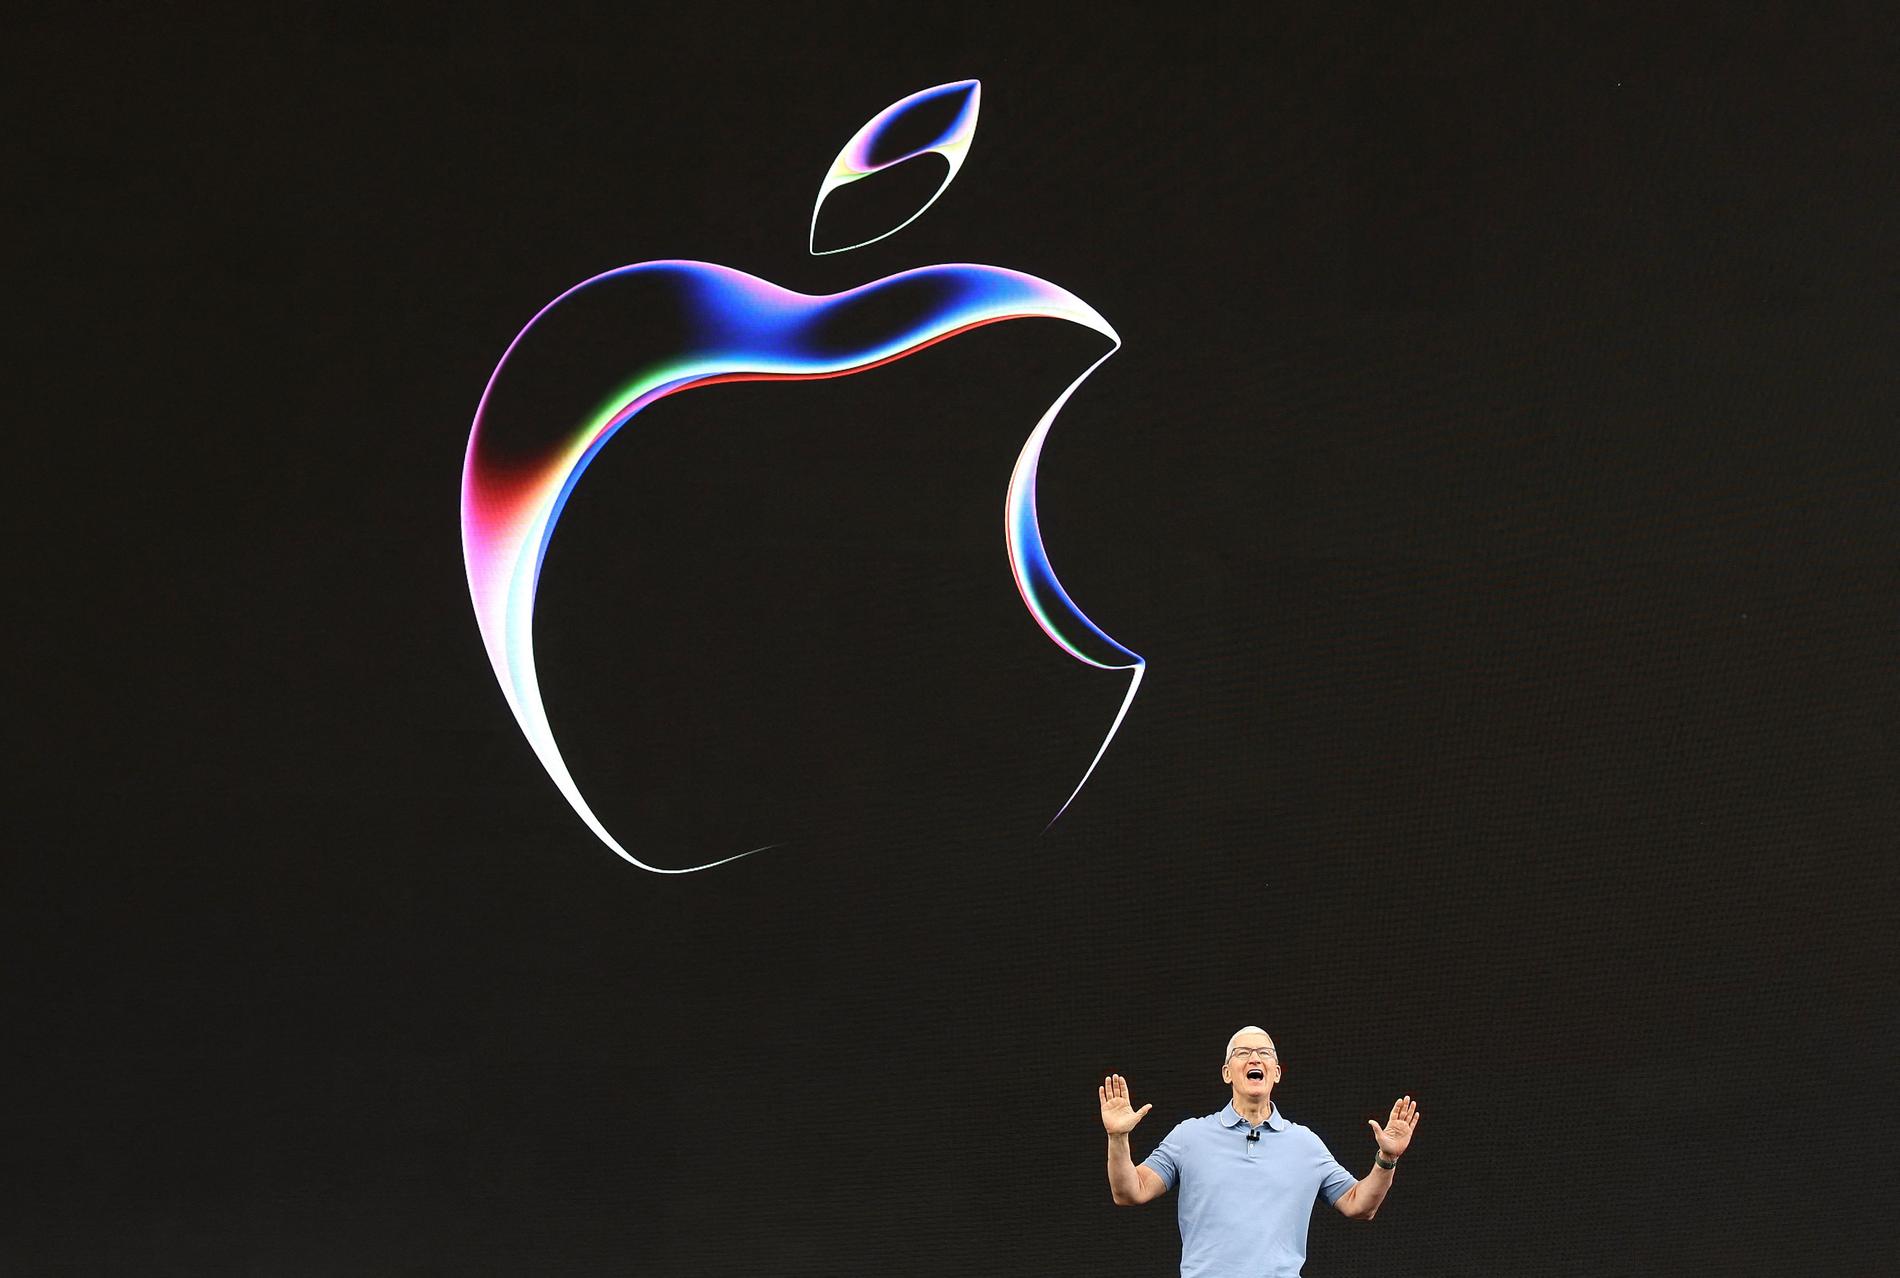 Apple's revenue decline – $90.75 billion in revenue in the last quarter – E24